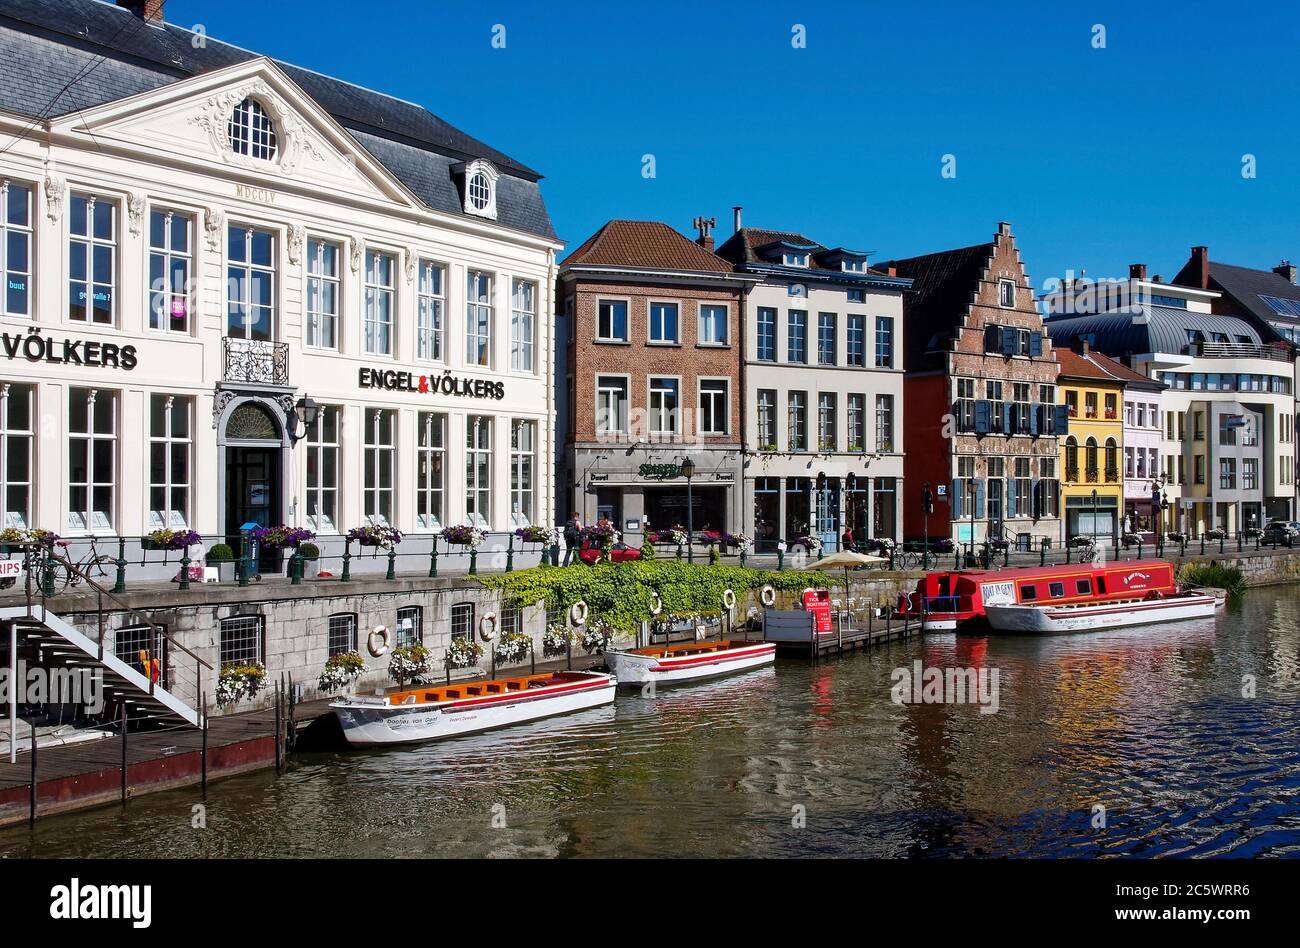 canal escena, agua, un edificio de arquitectura flamenca, otros modernizados, pequeños barcos, tour, flores, Flandes, Europa, Gante; Bélgica Foto de stock